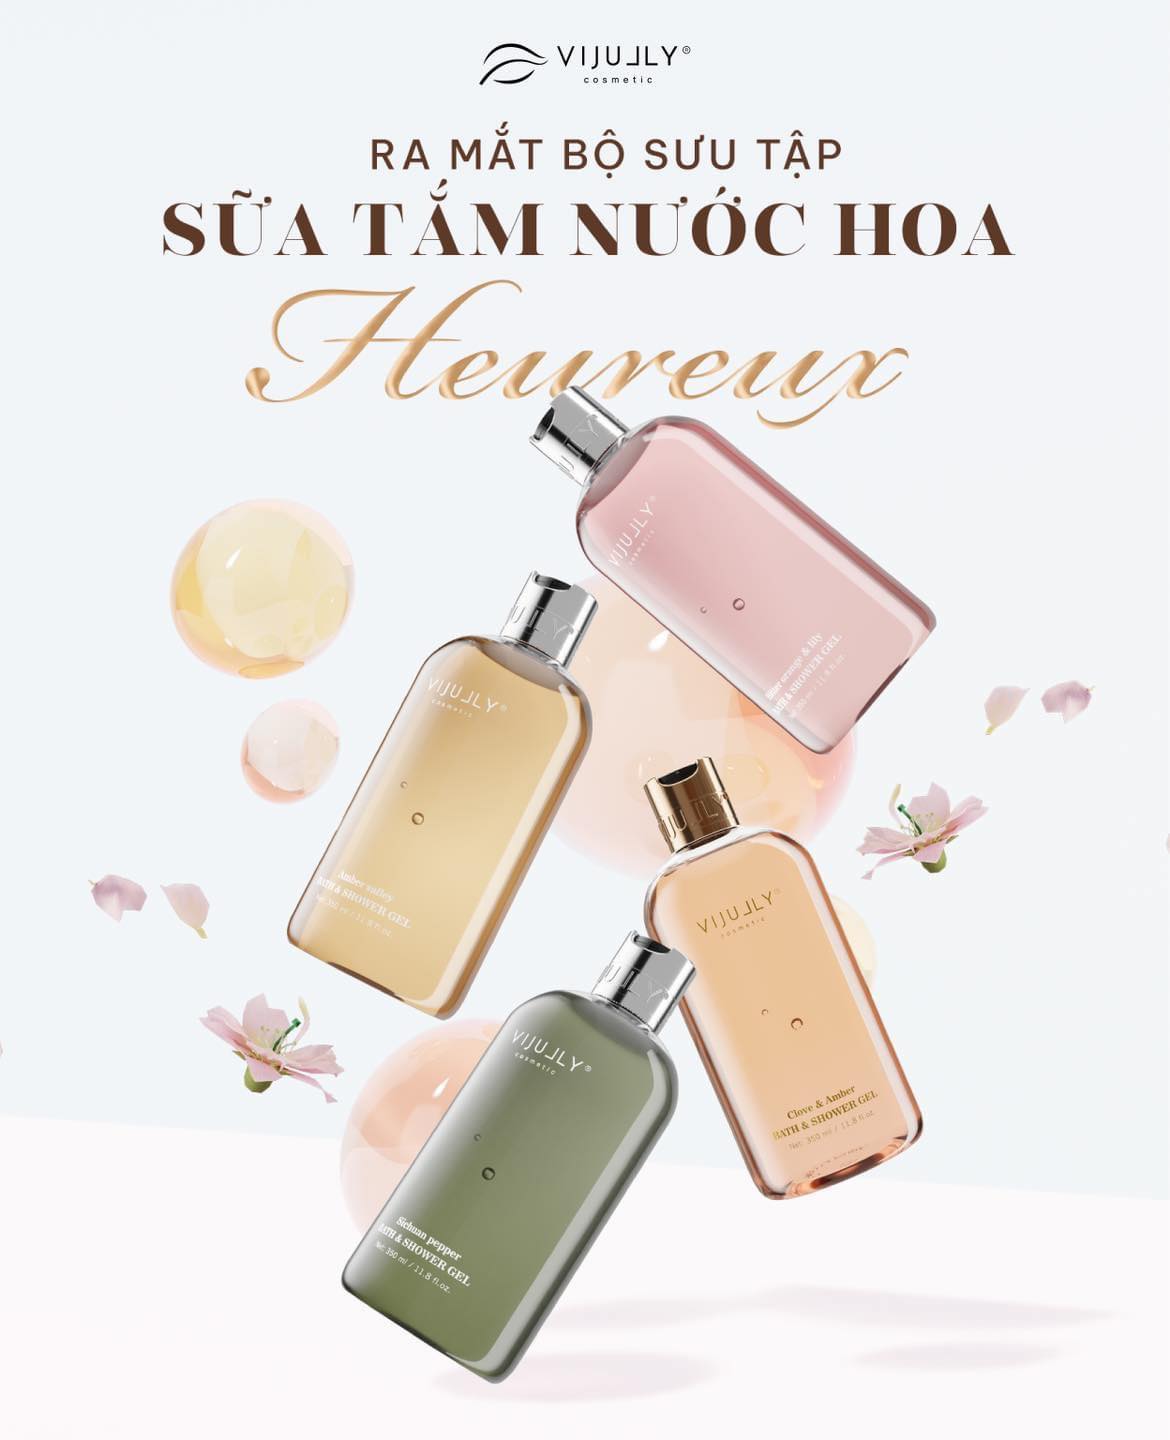 Sữa tắm nước hoa Heureux by Vi Jully có 4 dòng sản phẩm